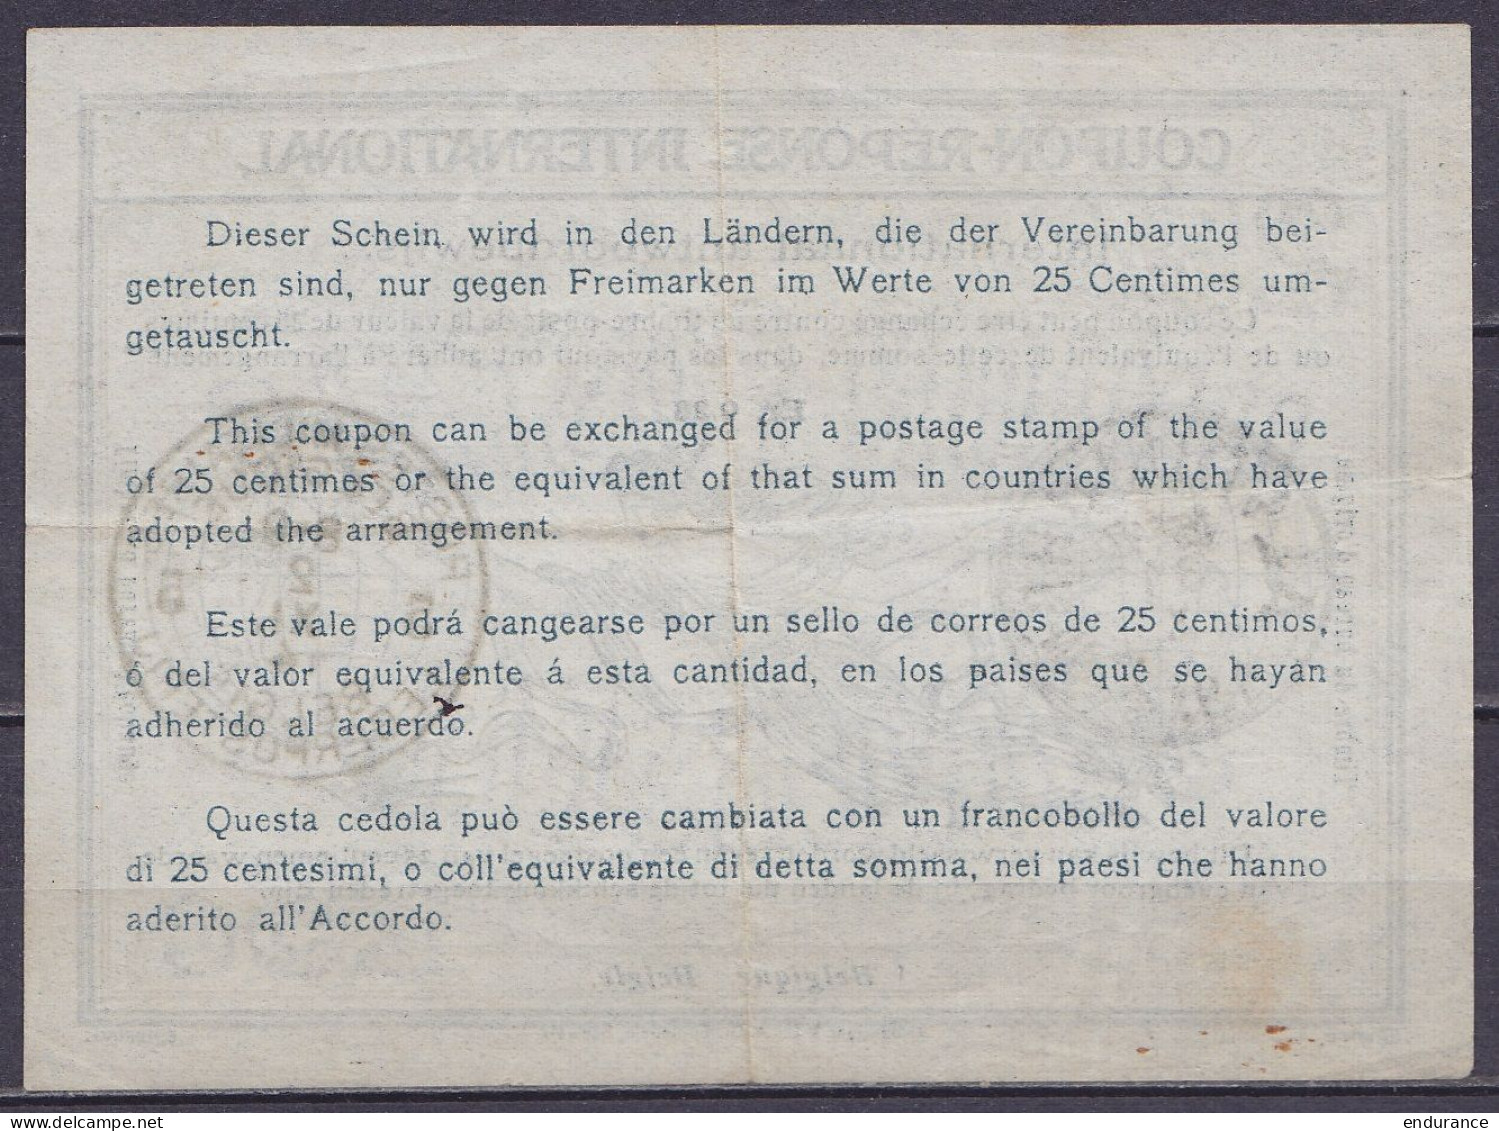 Coupon-réponse International De ALVERINGHEM /31 X 1914 - Début De Guerre Et Territoire Non-envahi Pour Bureau Postal Mil - Zona No Ocupada